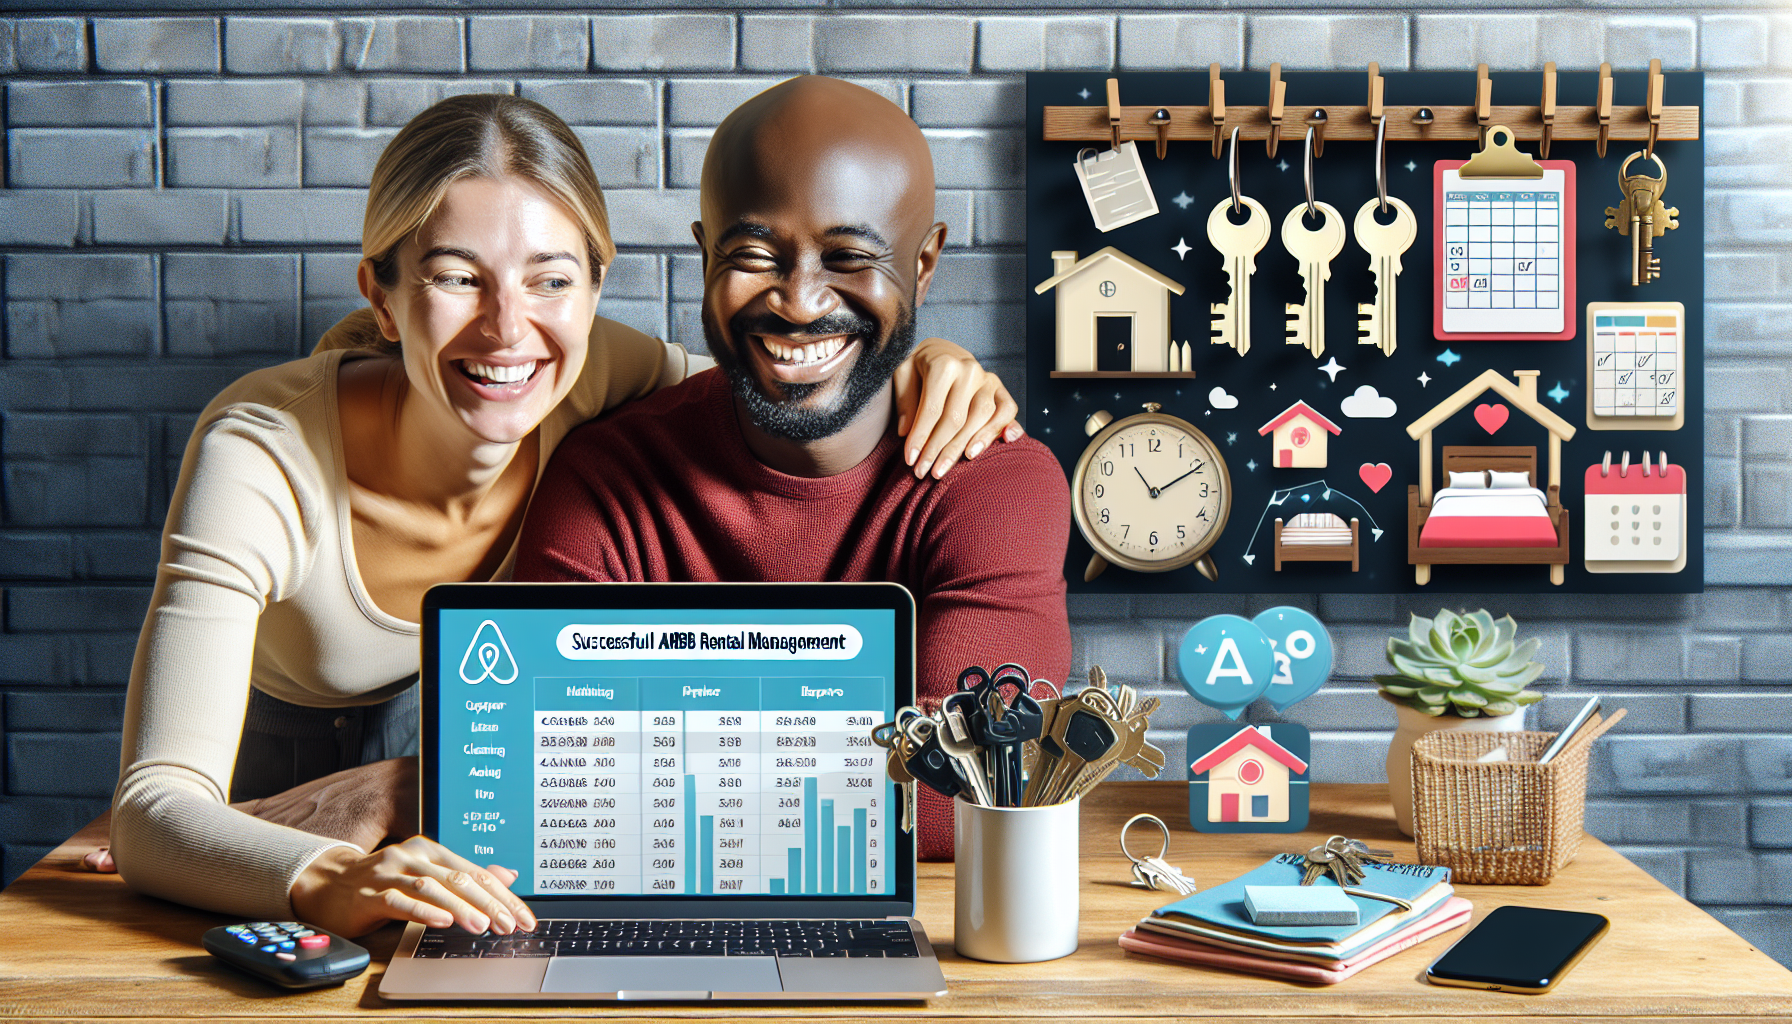 découvrez comment optimiser la gestion locative sur airbnb : conseils, astuces et bonnes pratiques pour rentabiliser votre bien immobilier en location saisonnière.